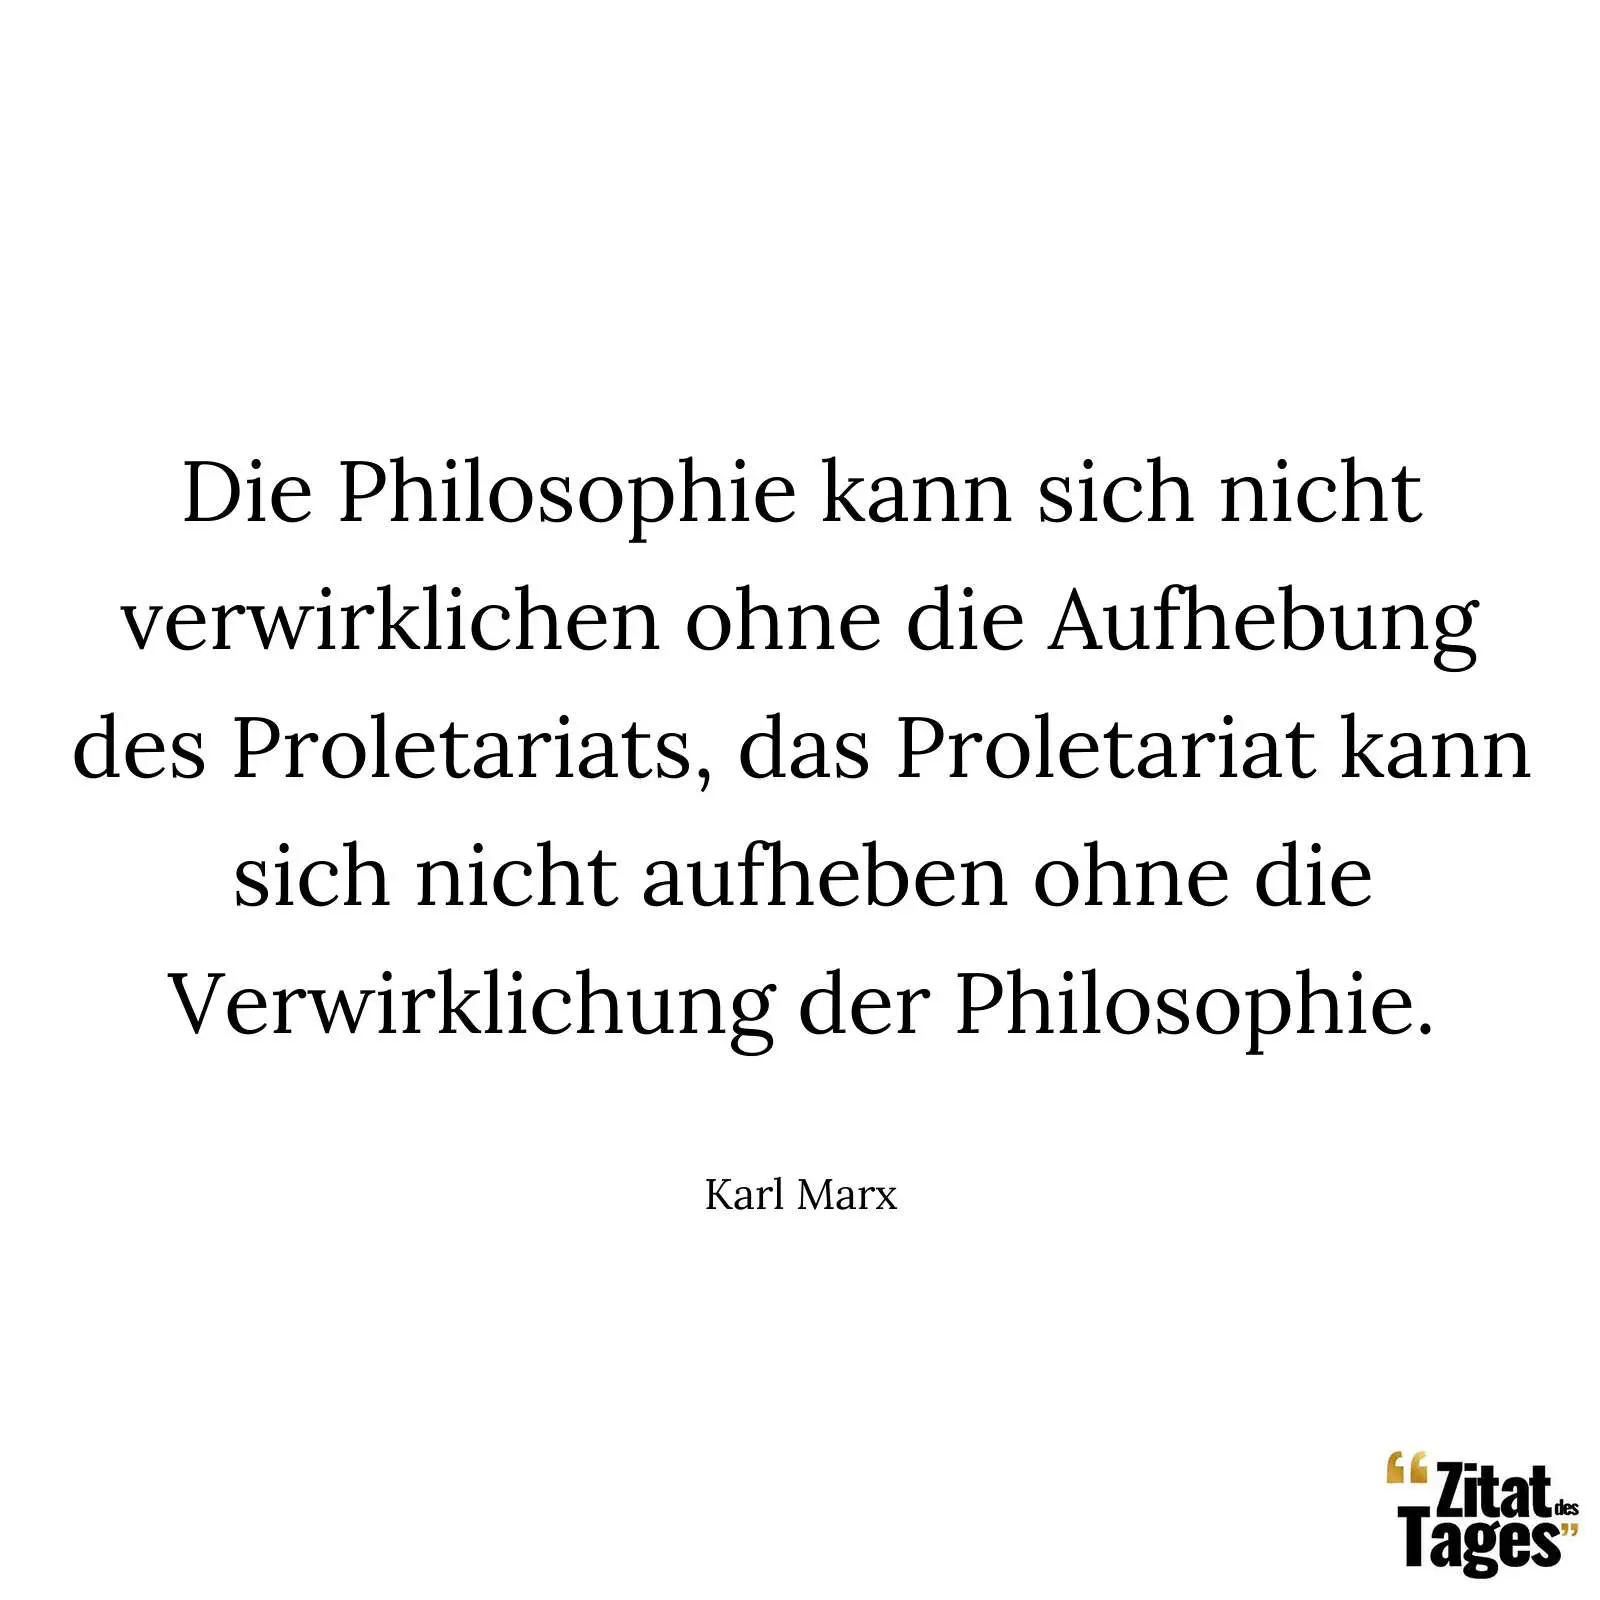 Die Philosophie kann sich nicht verwirklichen ohne die Aufhebung des Proletariats, das Proletariat kann sich nicht aufheben ohne die Verwirklichung der Philosophie. - Karl Marx